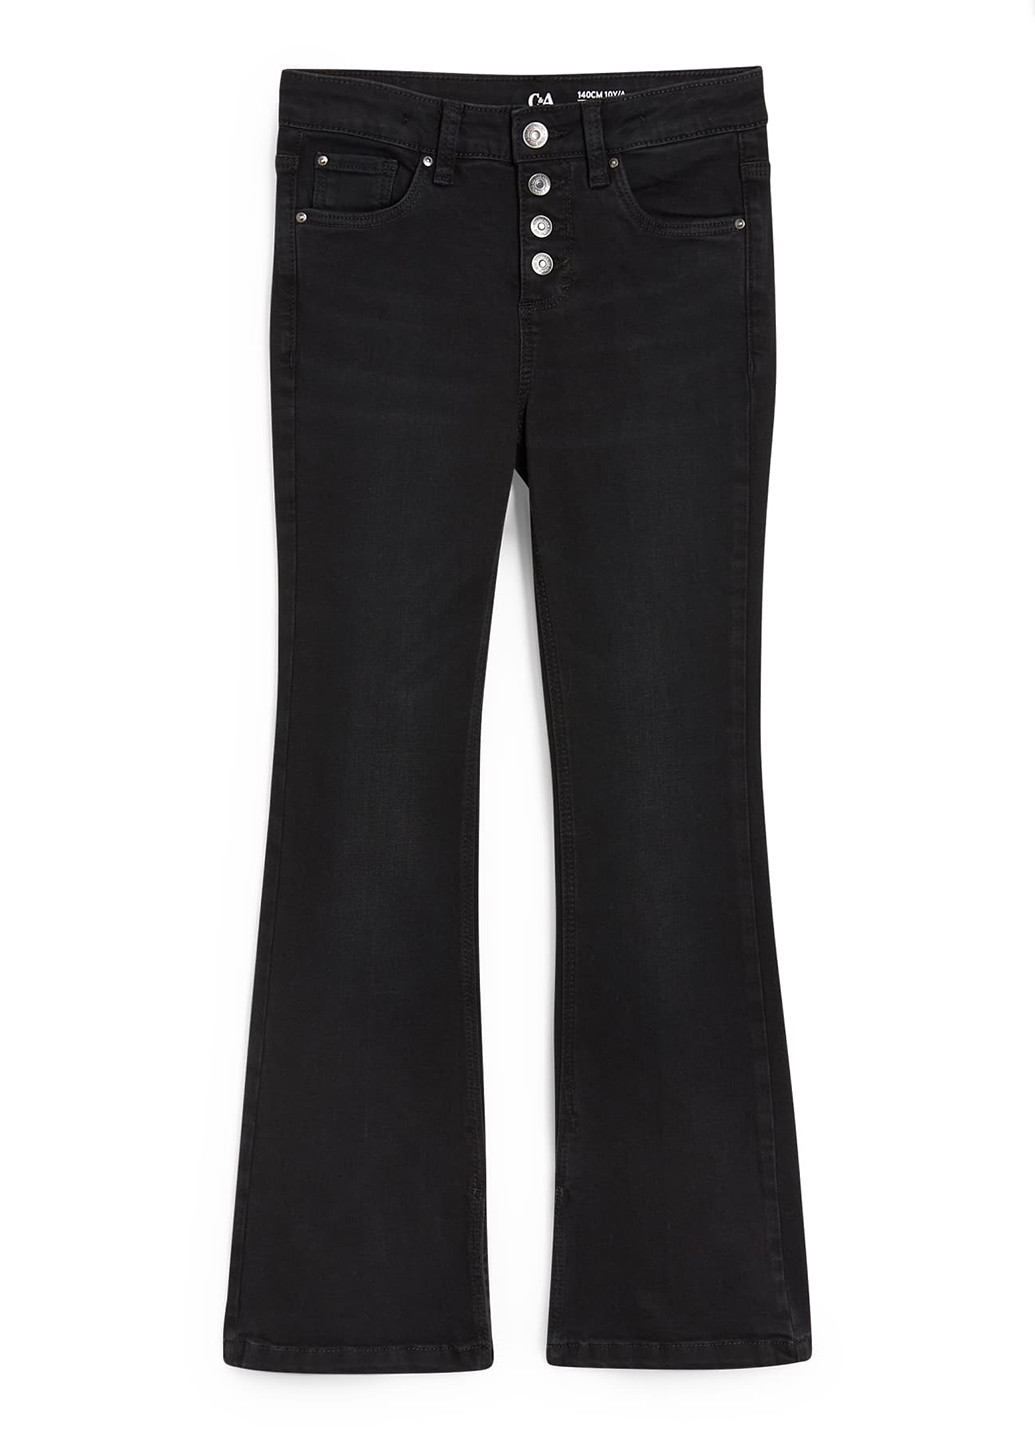 Черные демисезонные буткат фит джинсы C&A